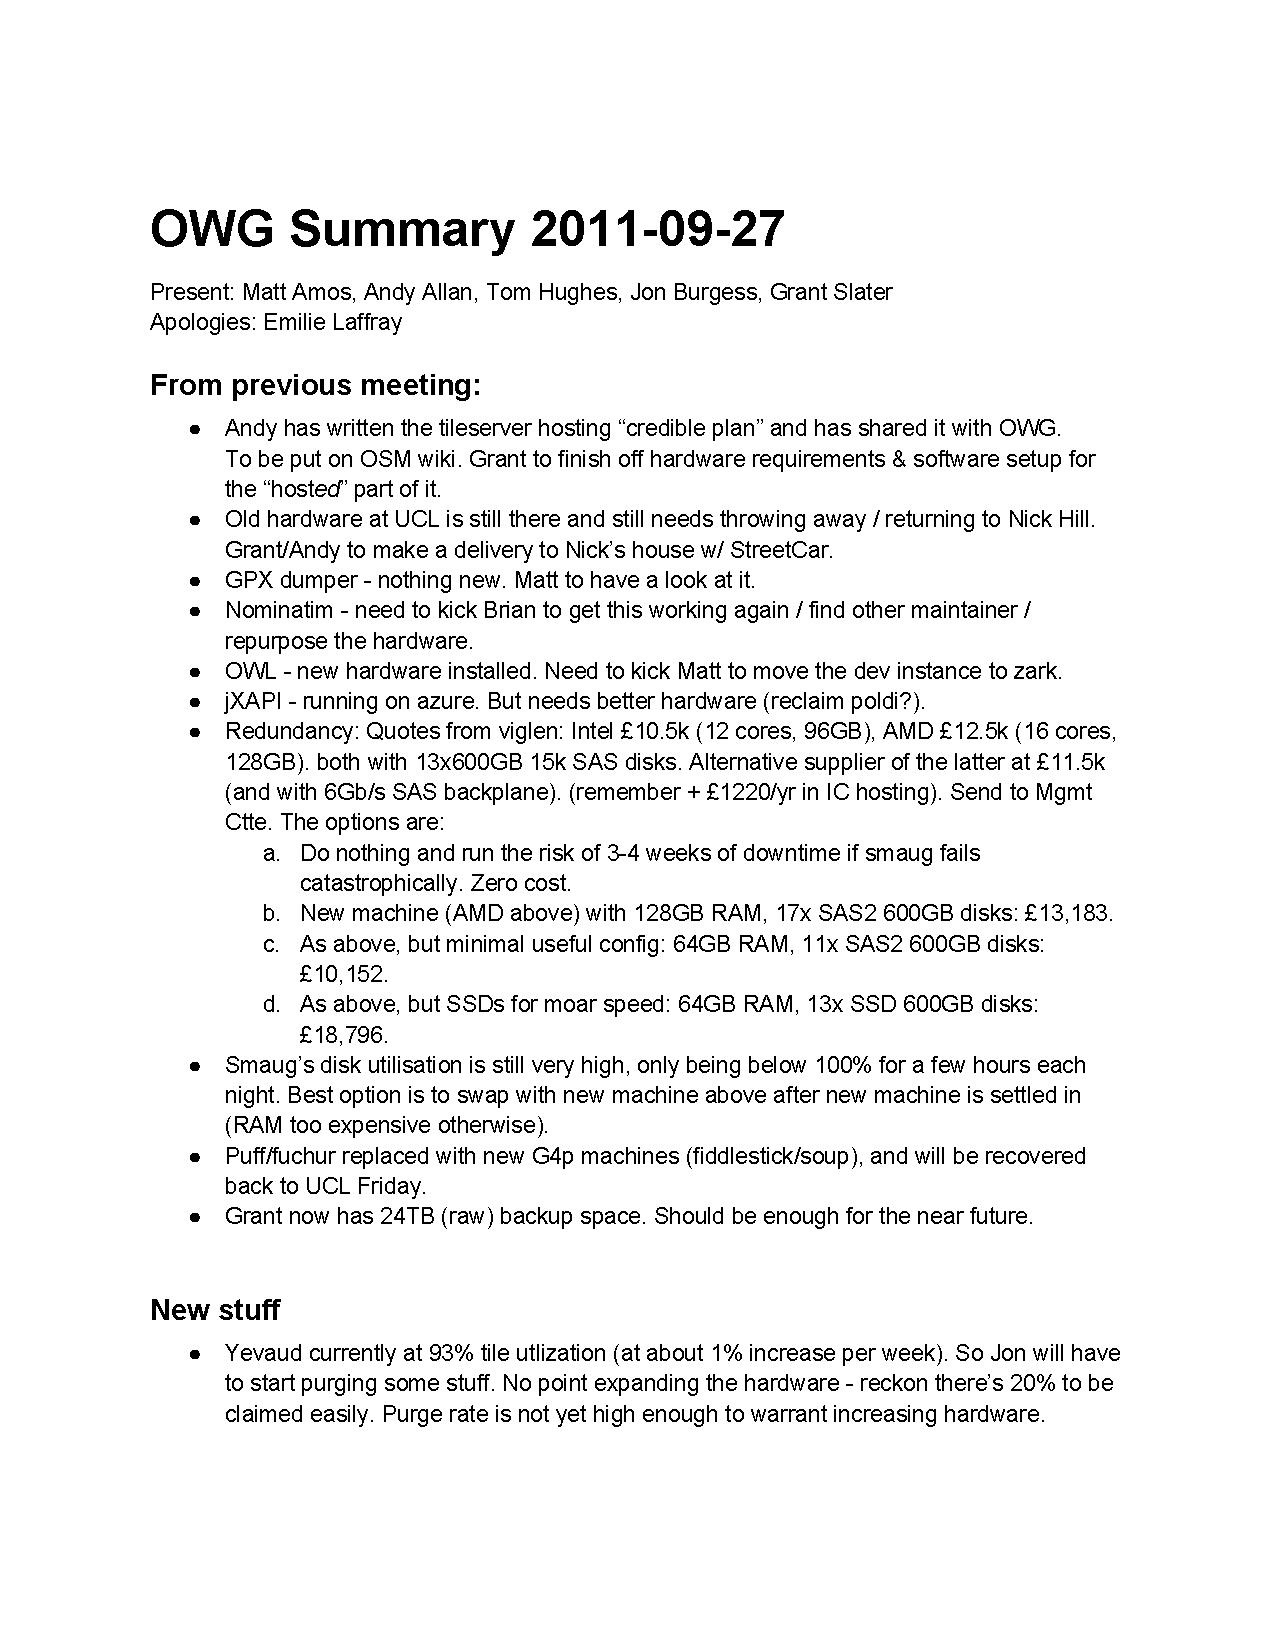 OWG Summary 2011-09-27.pdf